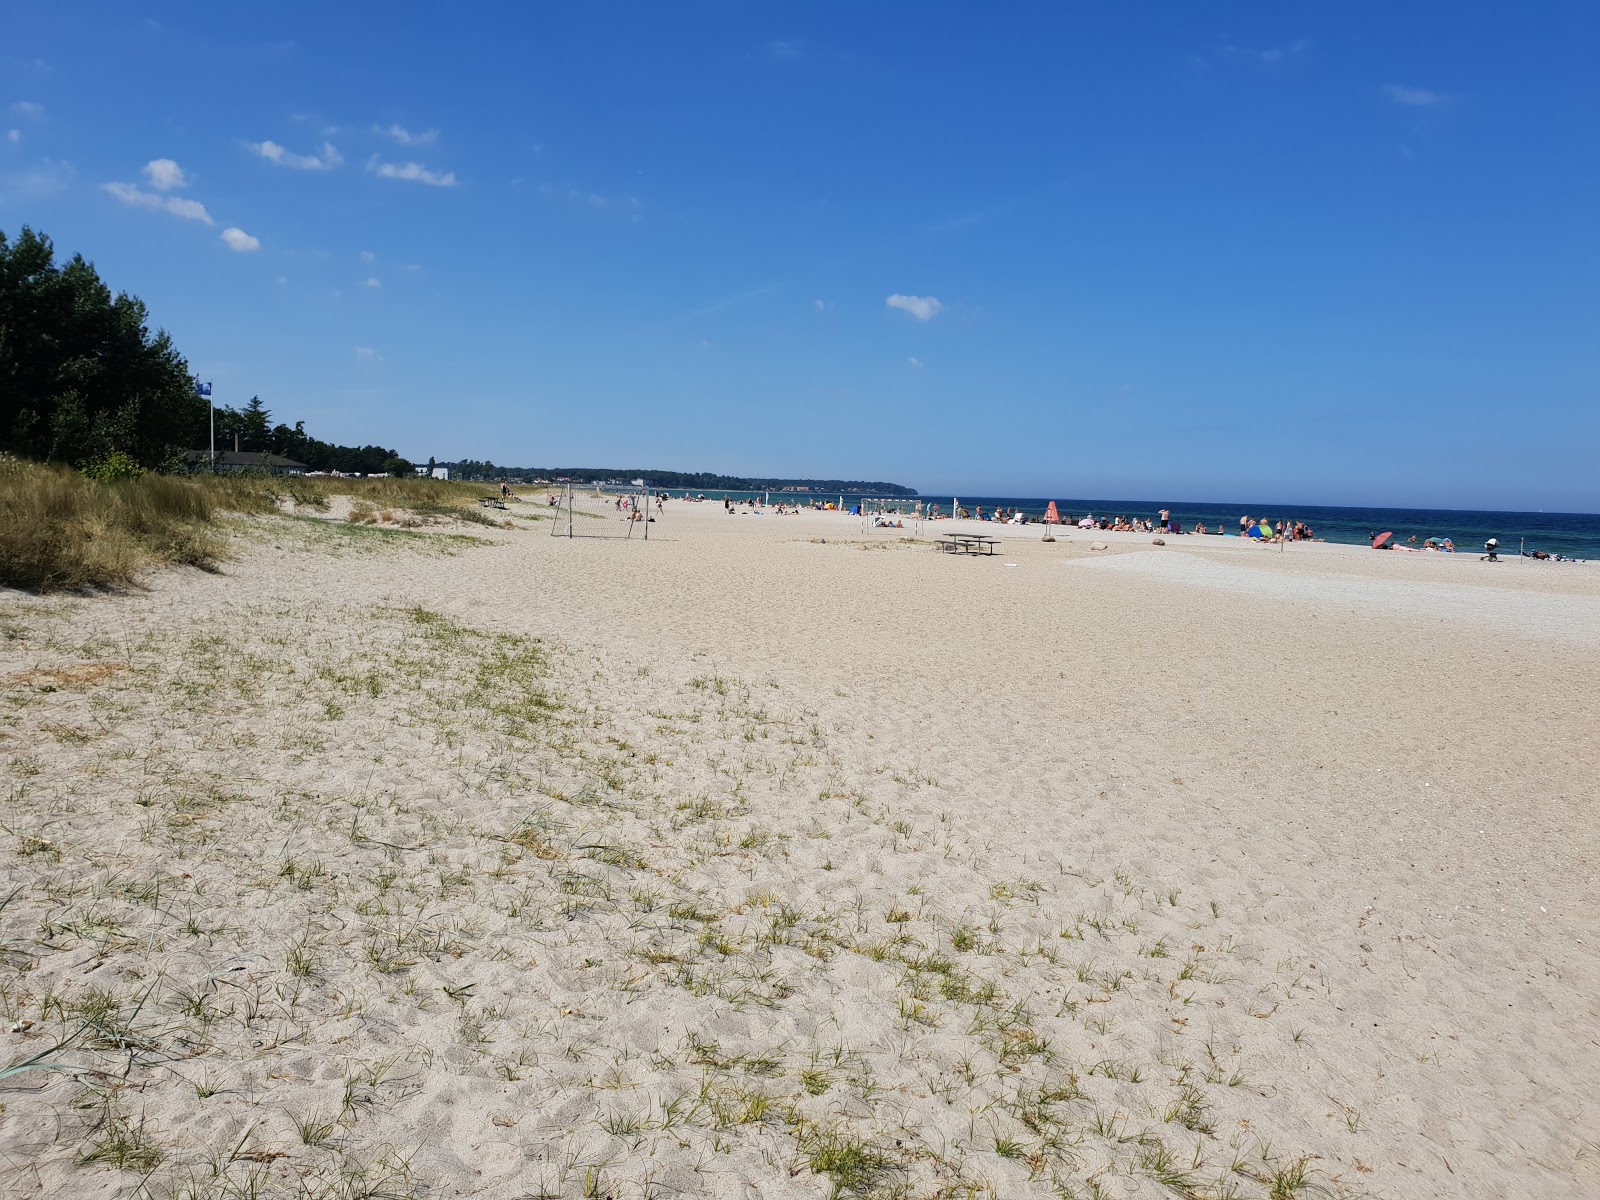 Nyborg Beach'in fotoğrafı geniş plaj ile birlikte